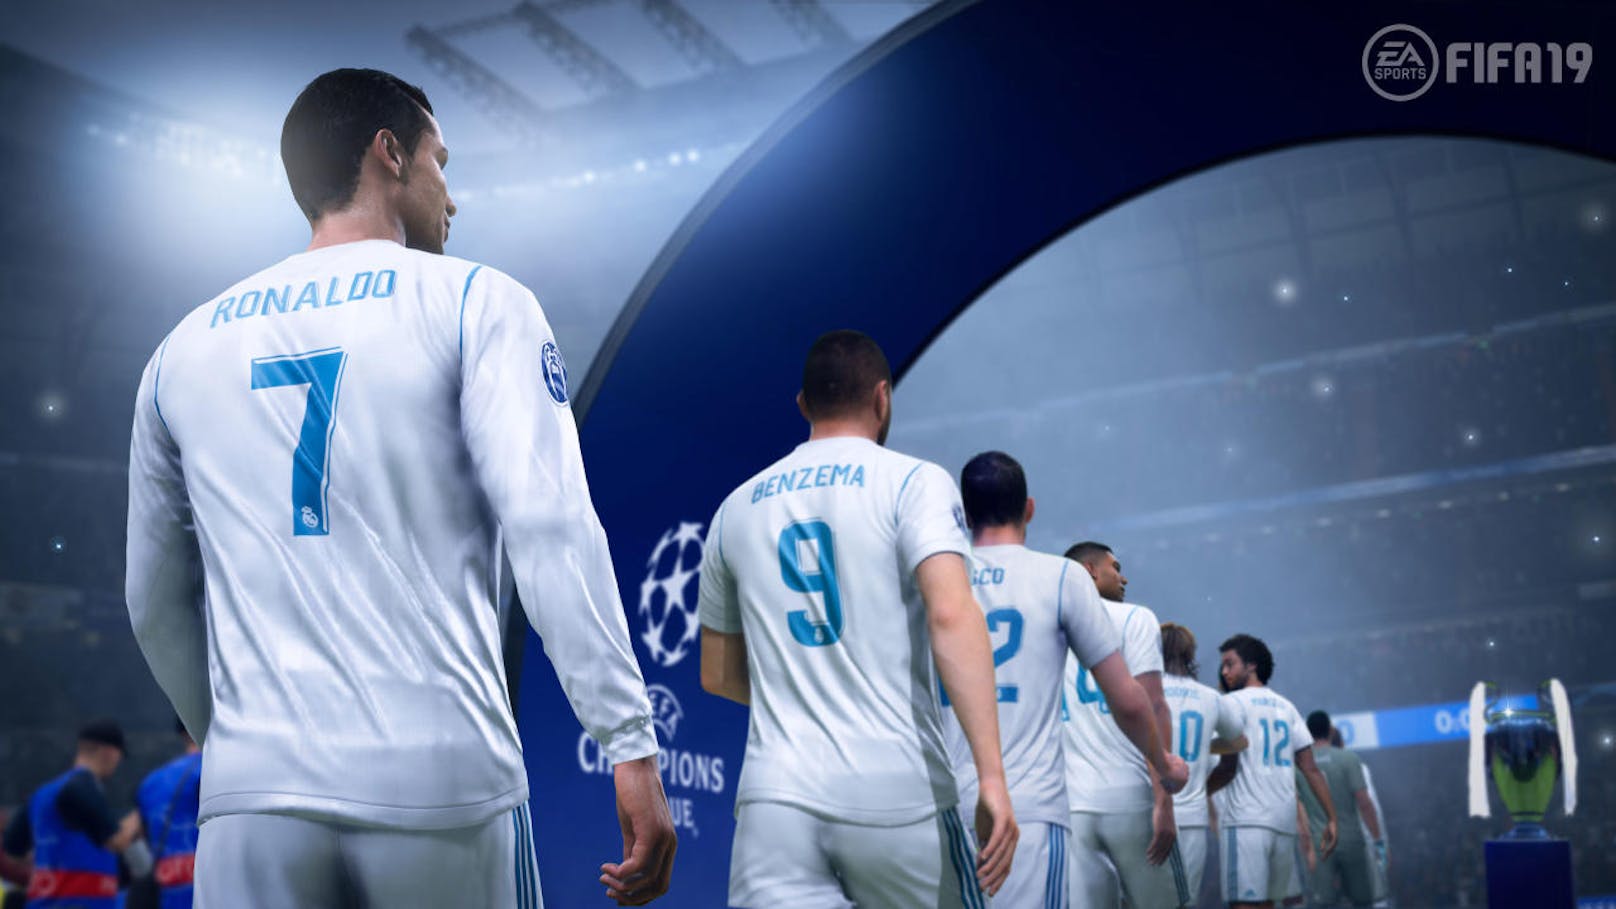 Mit FIFA 19 geht der Serienmeister der Fußball-Games in die nächste Runde. Mit neuem Anstrich und der Champions League im Gepäck wird EA Sports ab 28. September wieder die Wohnzimmer zu Fußball-Arenen zu verwandeln.